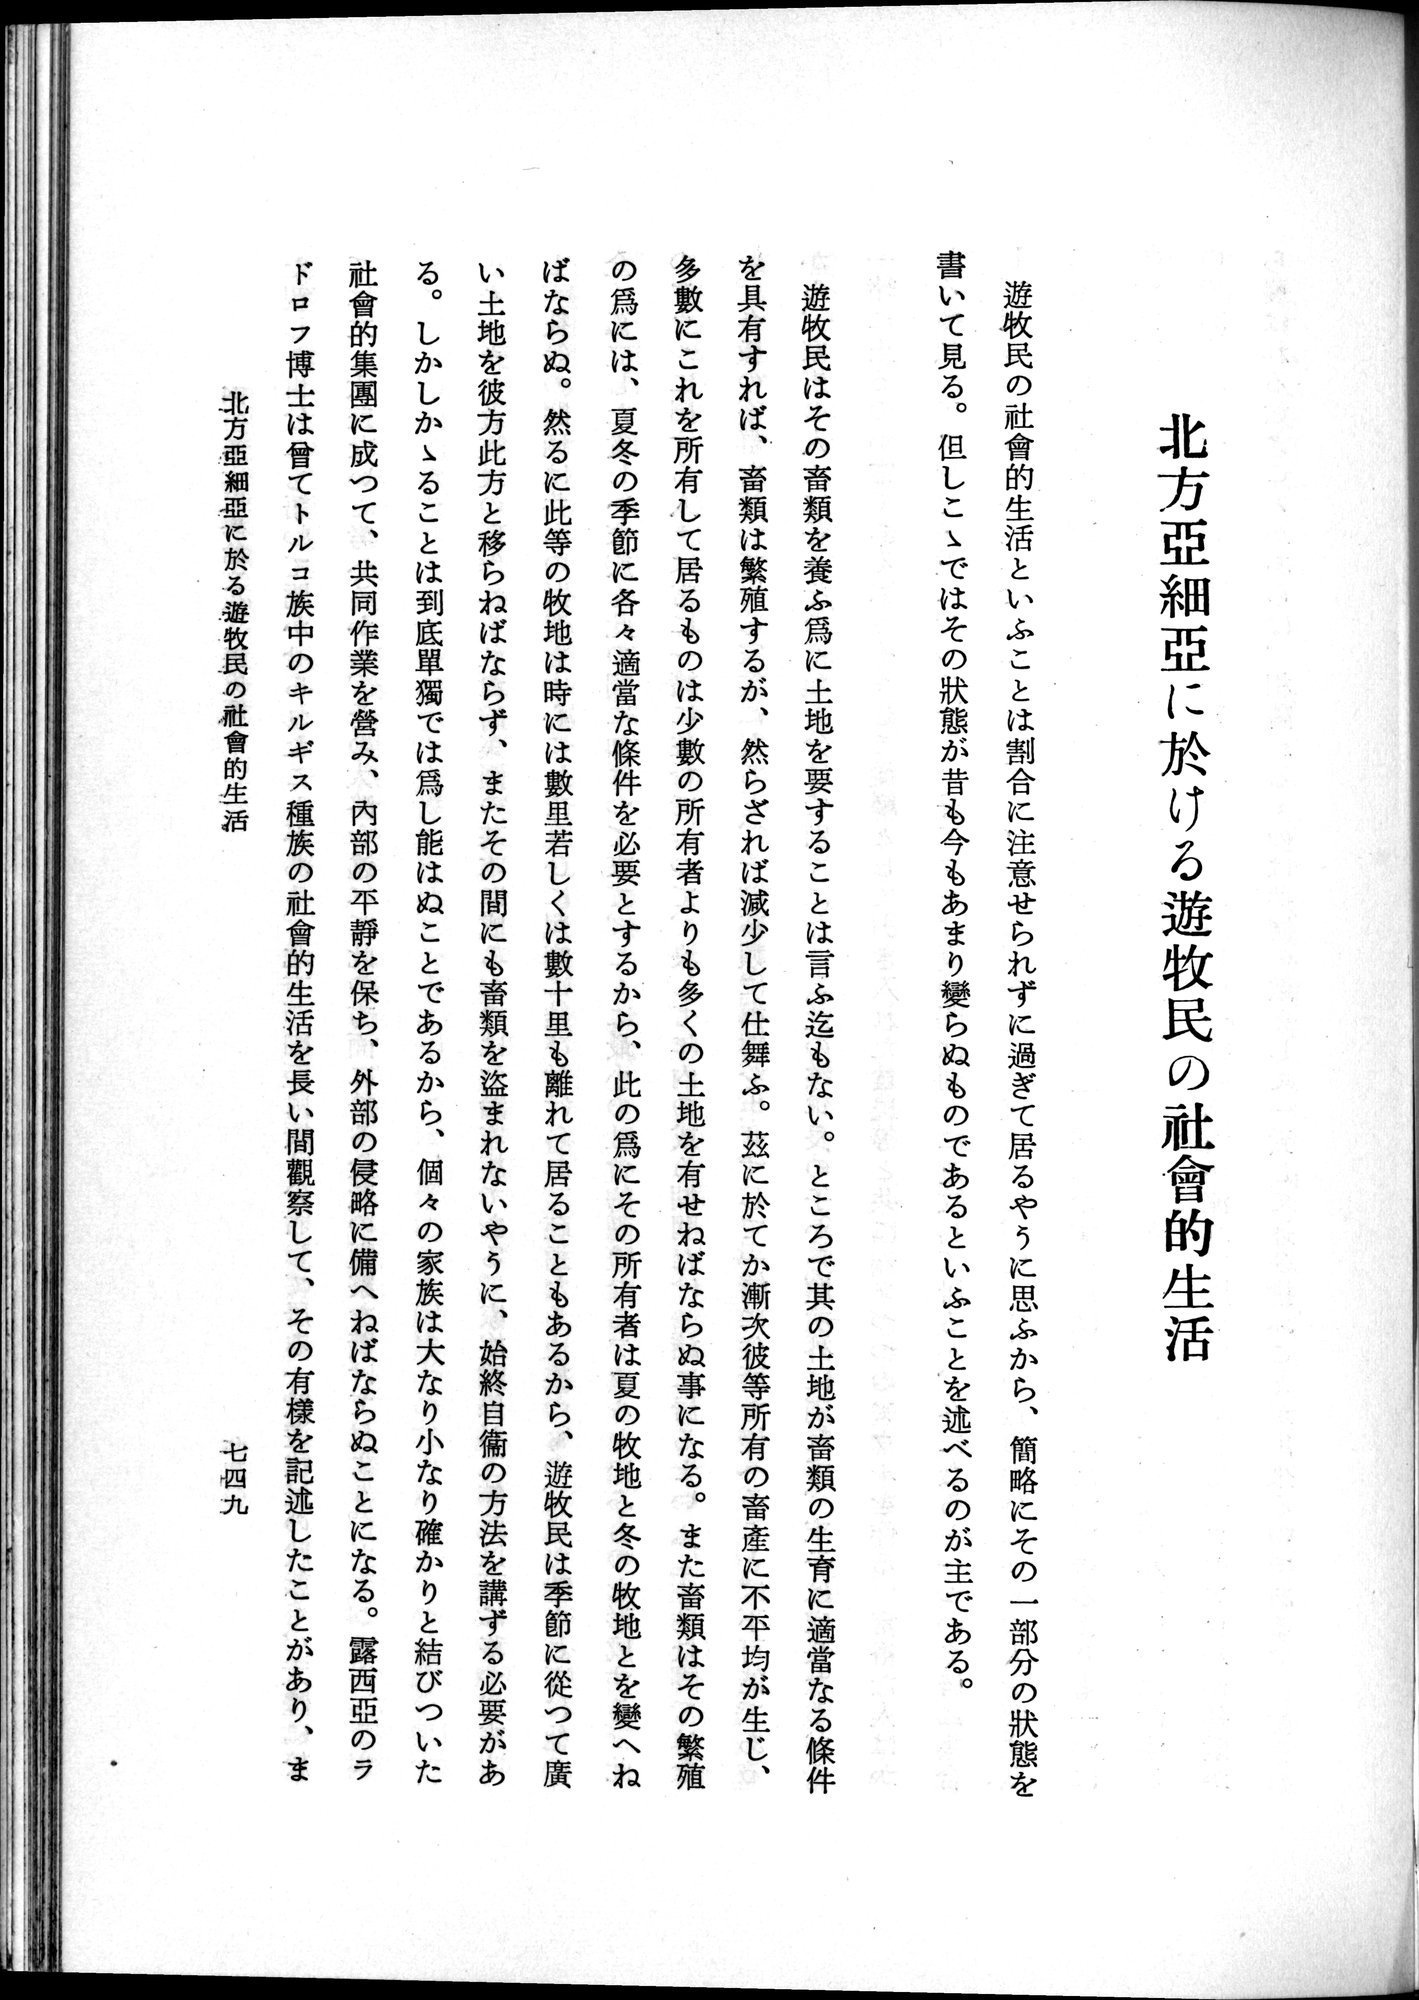 羽田博士史学論文集 : vol.1 / Page 787 (Grayscale High Resolution Image)